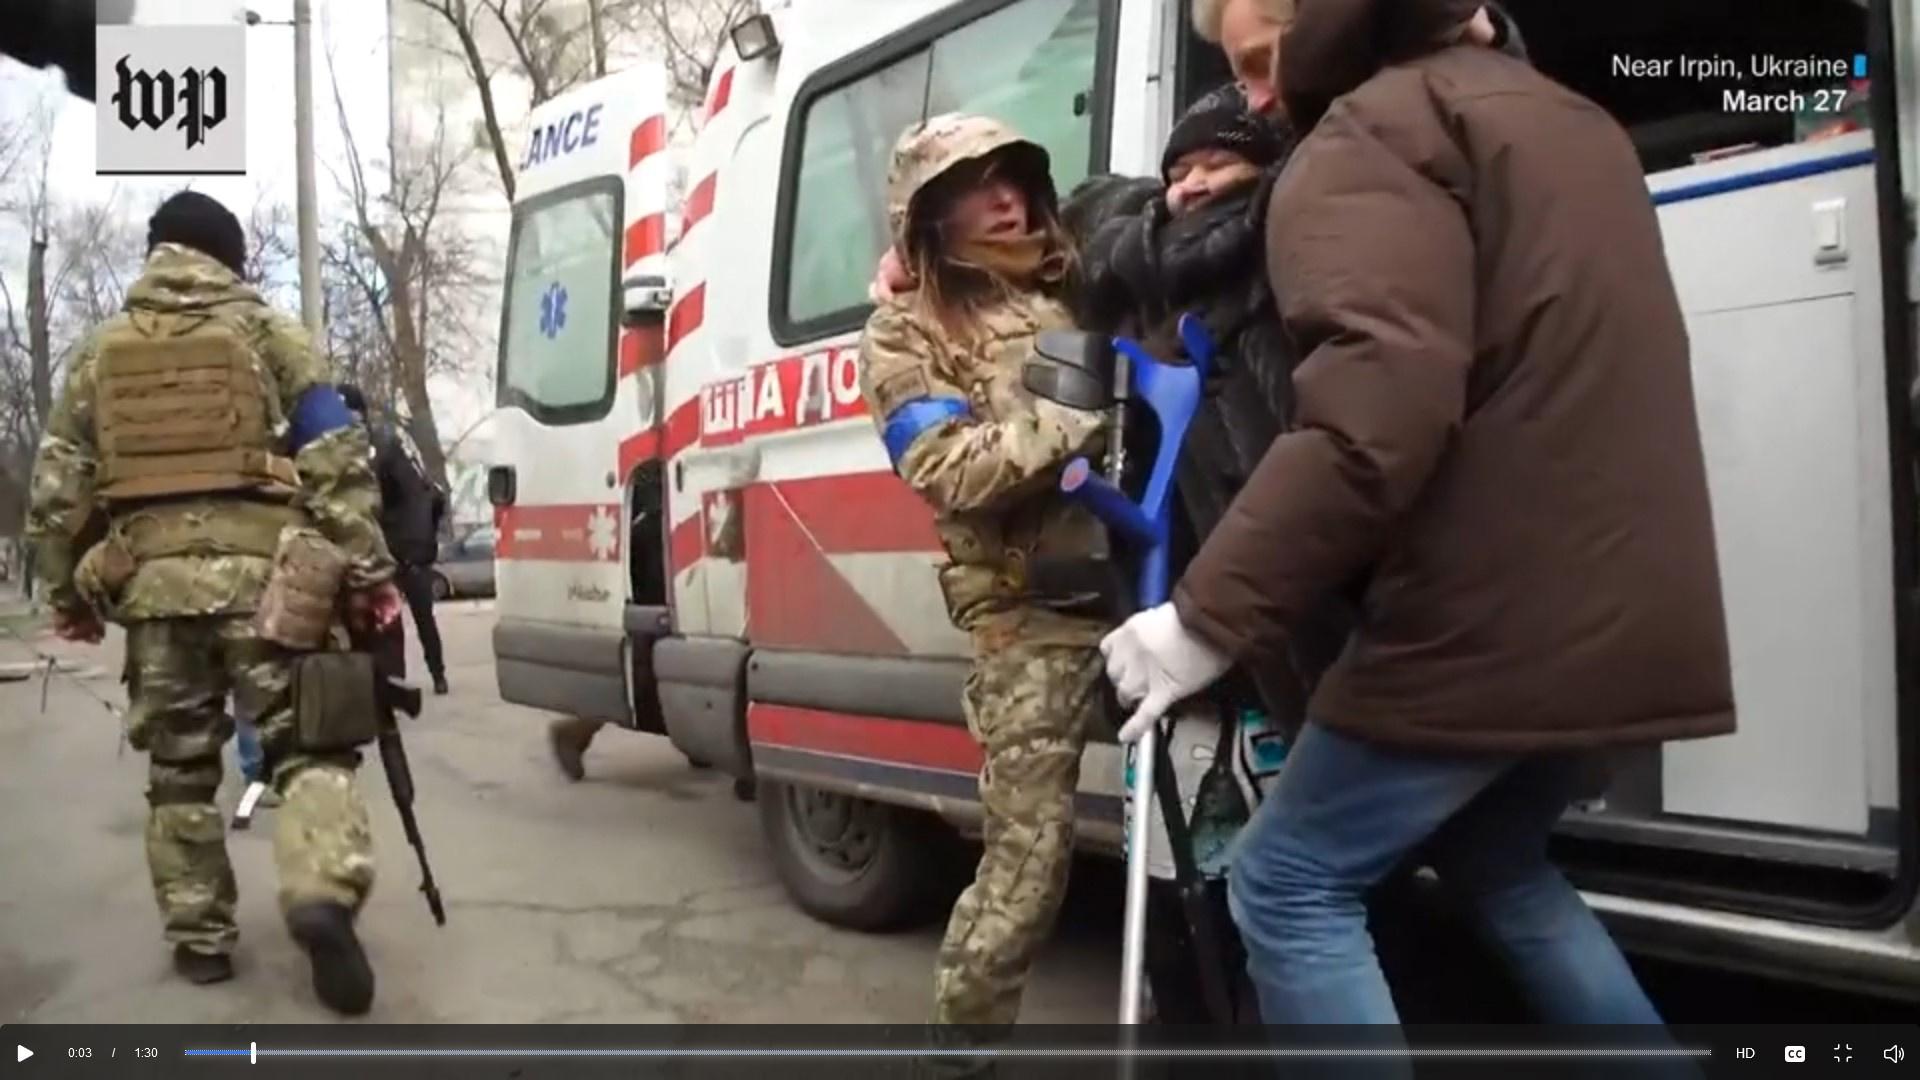 Factcheck: Oekraïense soldaten in busje met logo Rode Kruis is niet noodzakelijk een oorlogsmisdaad